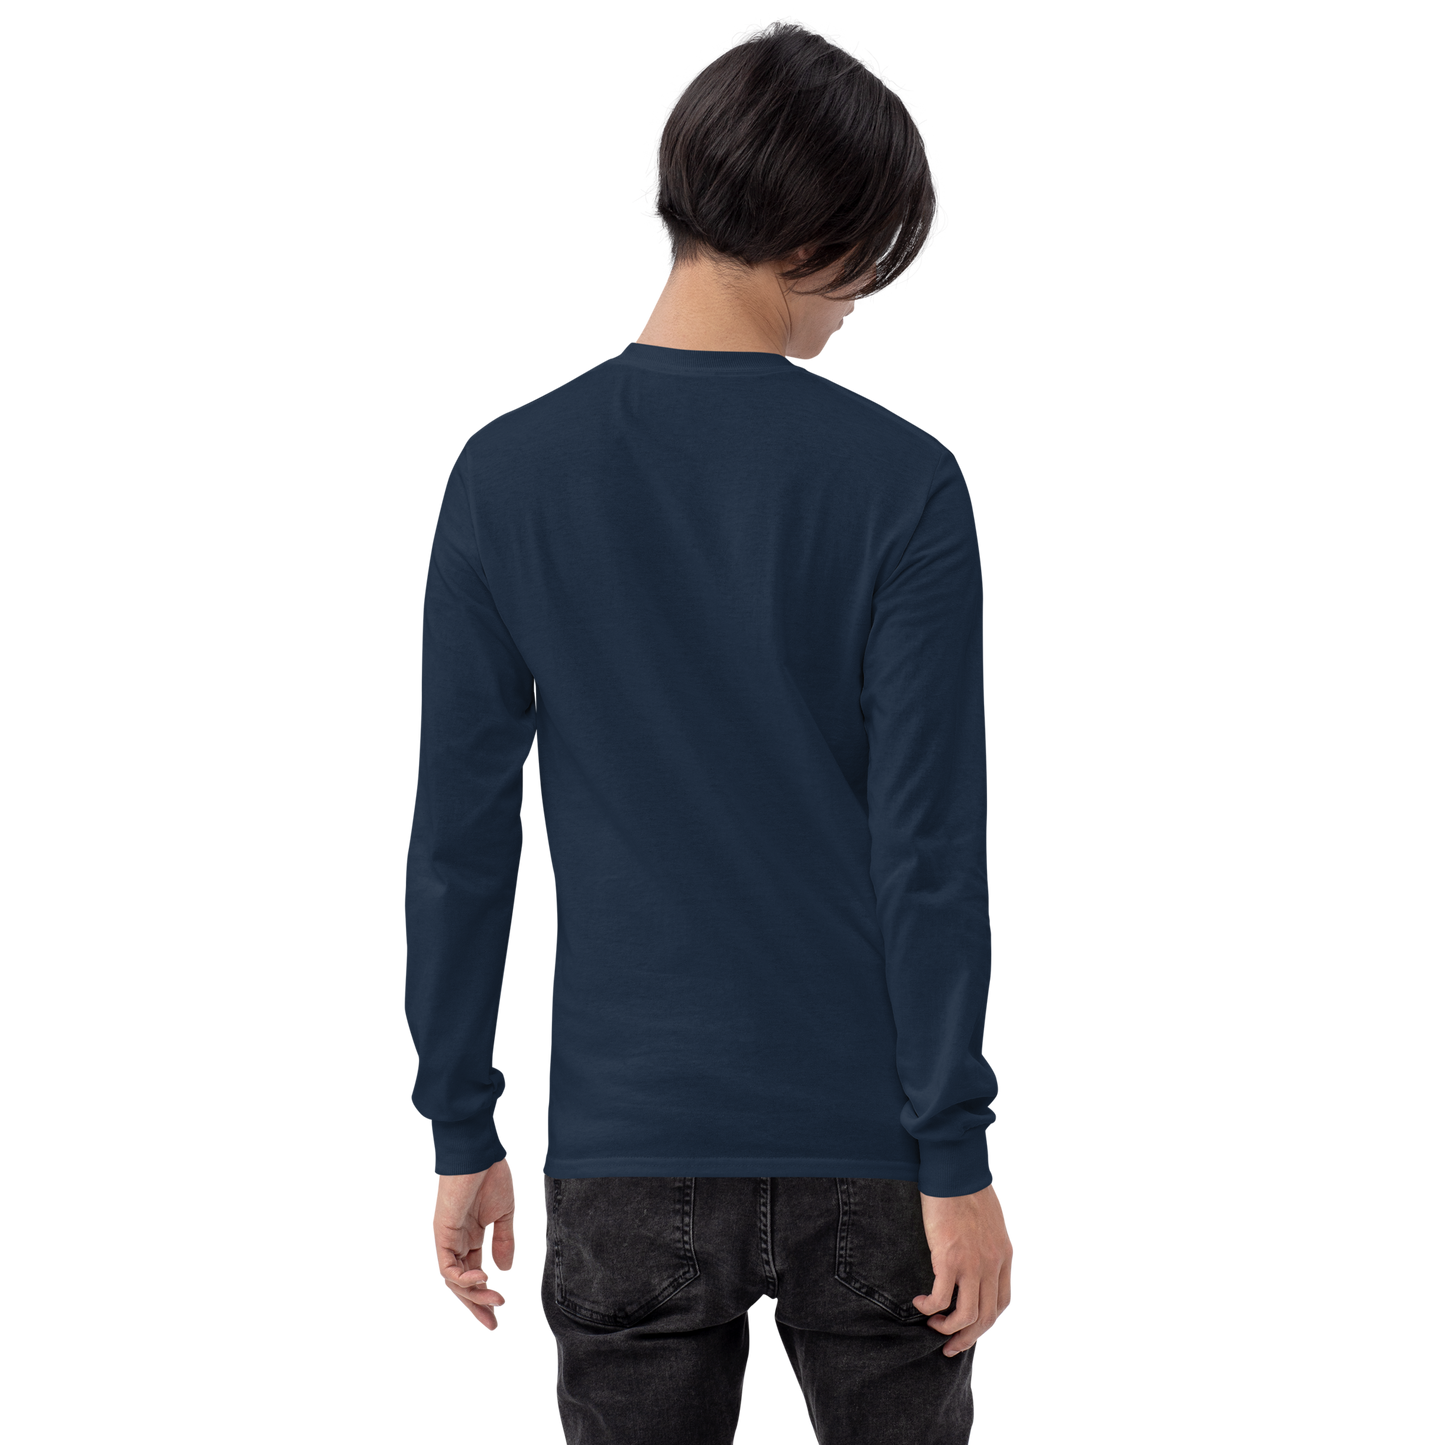 Camicia a maniche lunghe - Discreto V1.0 - Nero/Navy - Premium